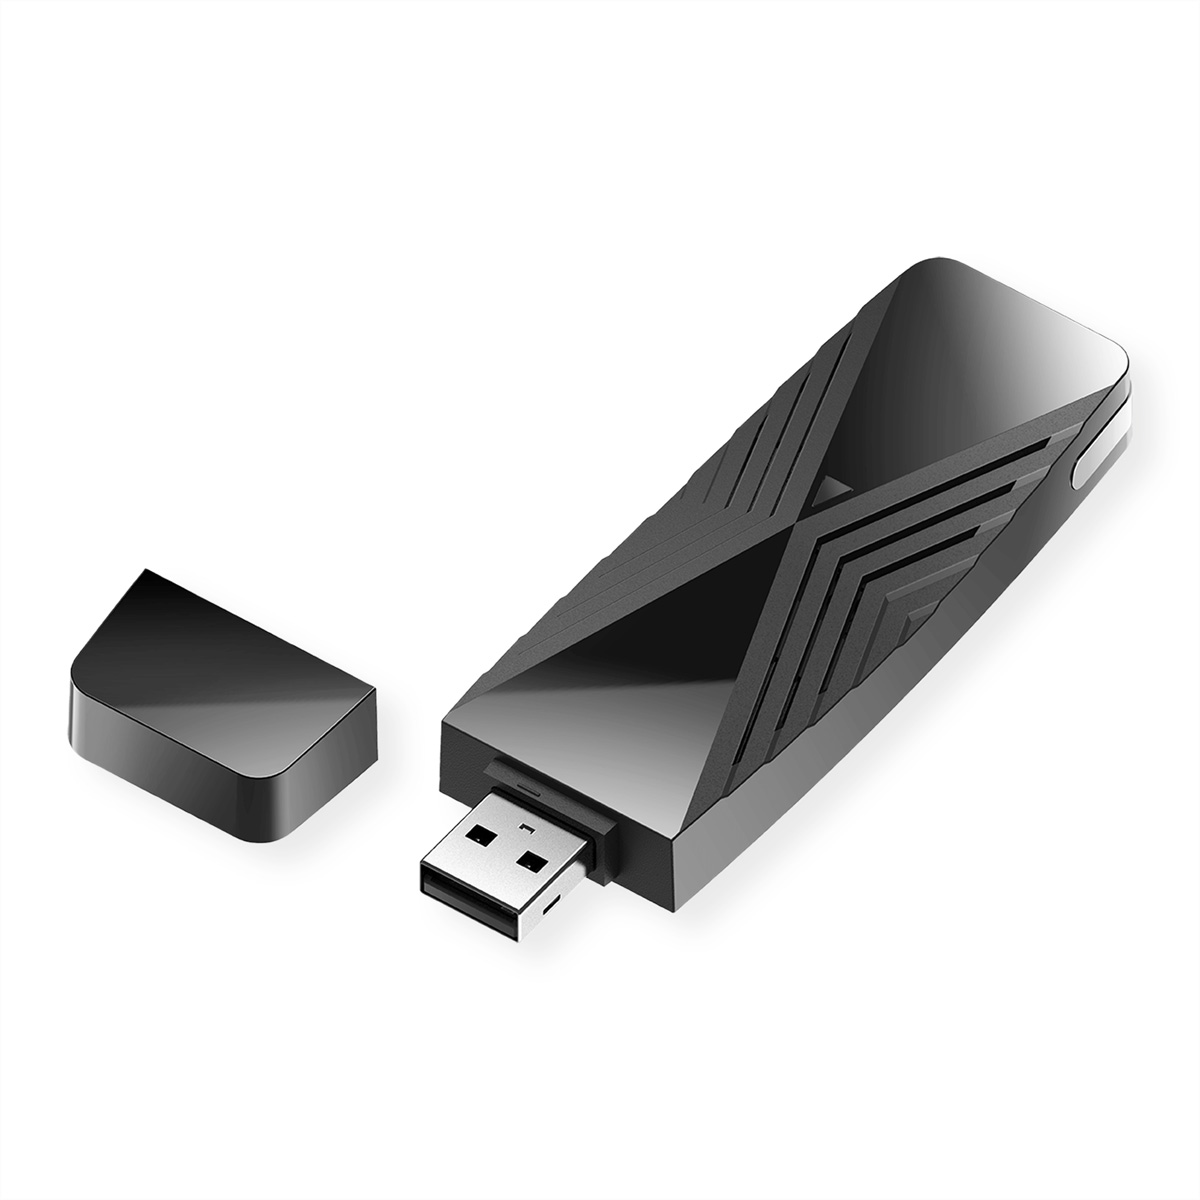 Stick USB AX1800 WLAN USB Wi-Fi Adapter D-LINK DWA-X1850 6